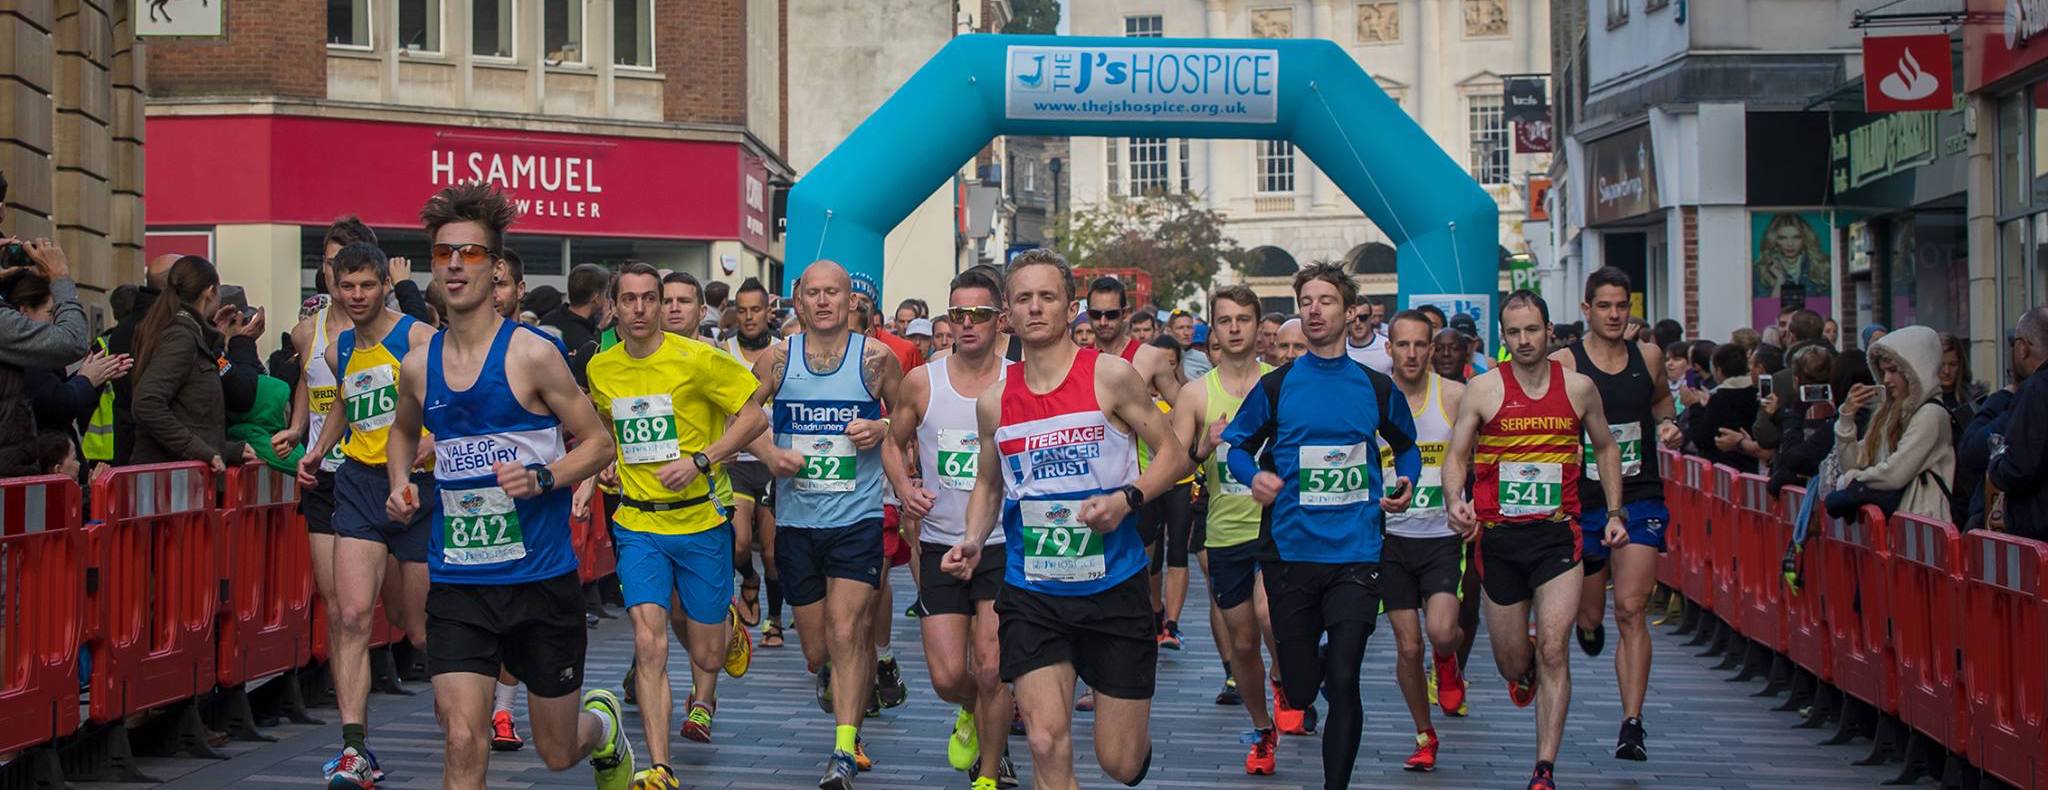 Start of the 2016 Chelmsford Marathon